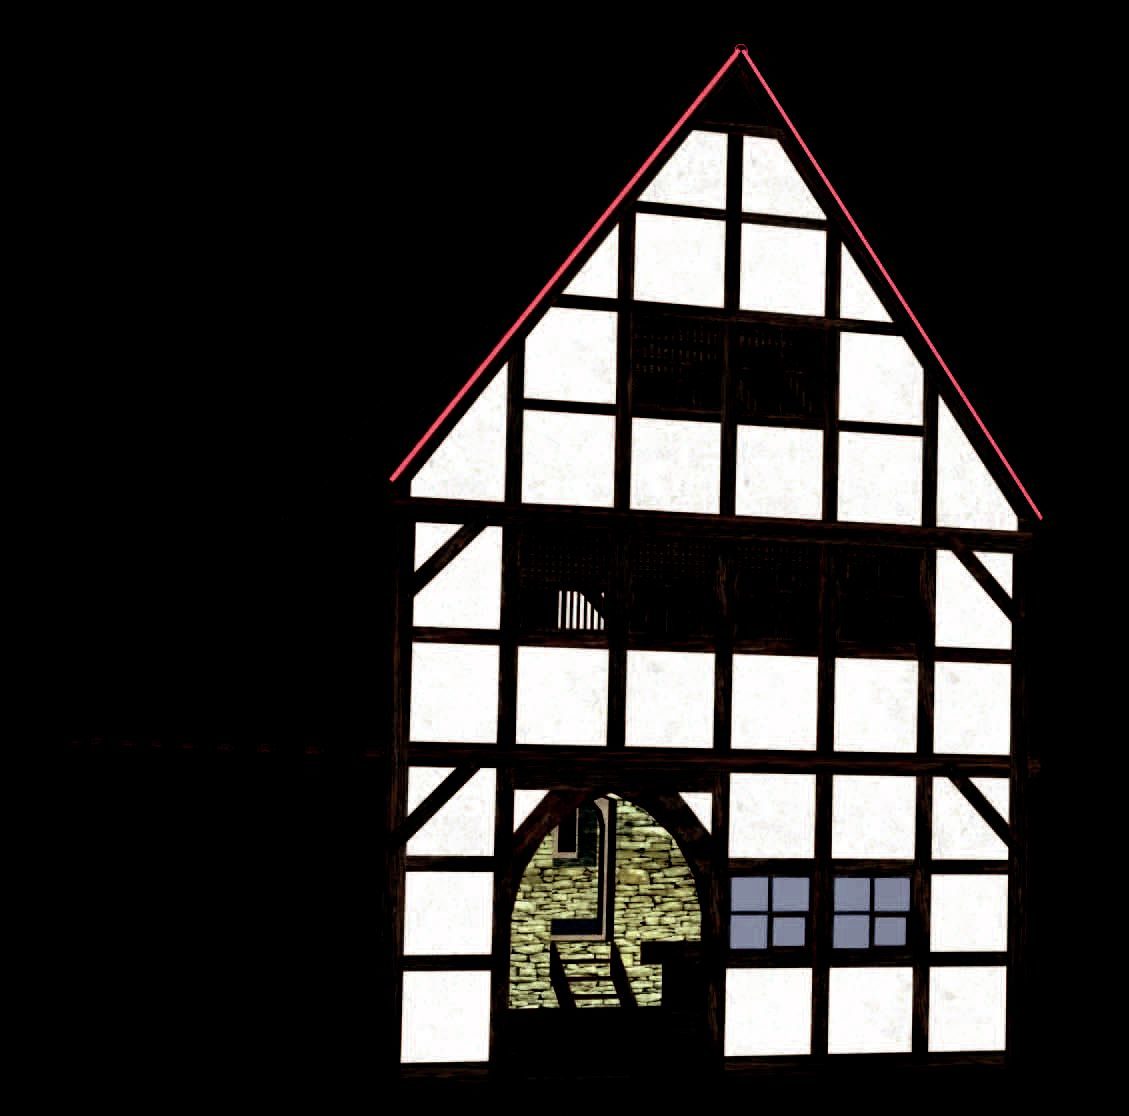 Braunschweig, Echternstraße 25, Rekonstruktionsversuch eines zweigeschossigen Giebelhauses aus dem späten 13. Jahrhundert nach den Grabungsbefunden. Über dem Keller ist ein massiv ummauerter Wohnraum, eine Steinkammer, rekonstruiert. (Wird bei Klick vergrößert)